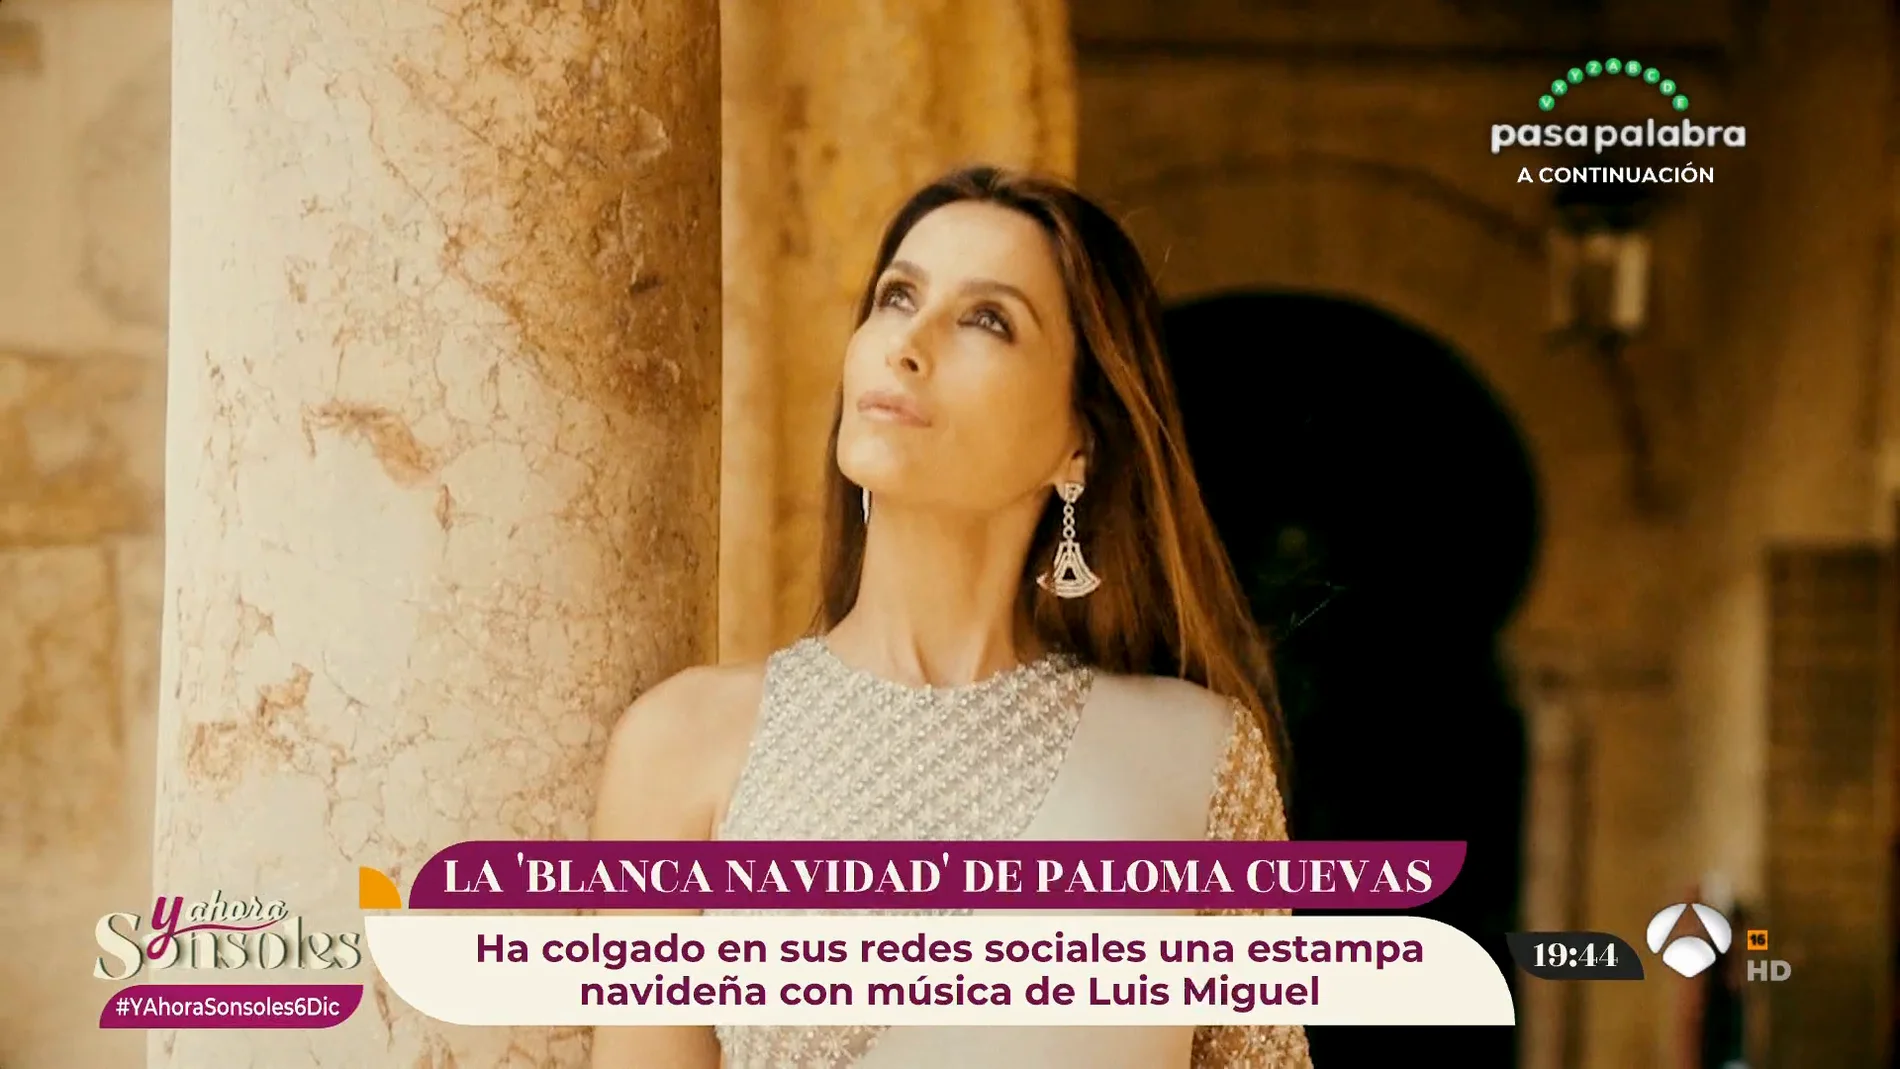 Paloma Cuevas prepara la Navidad al son de Luis Miguel… ¿Estará confirmando los rumores?